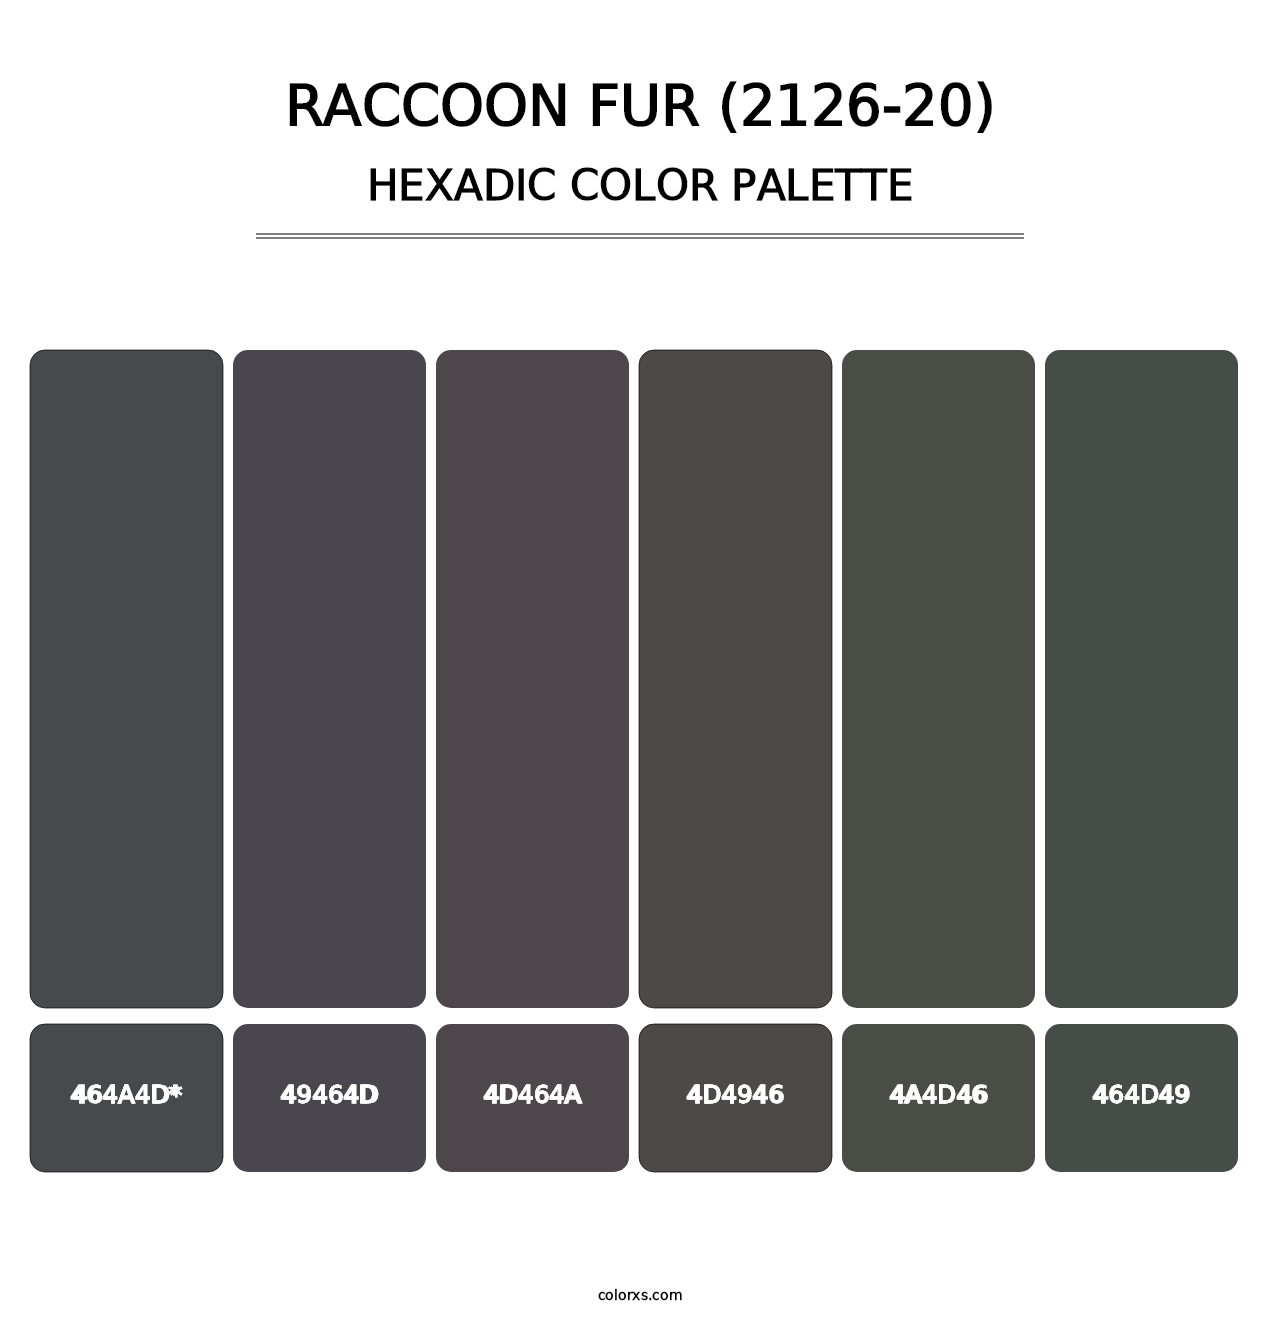 Raccoon Fur (2126-20) - Hexadic Color Palette